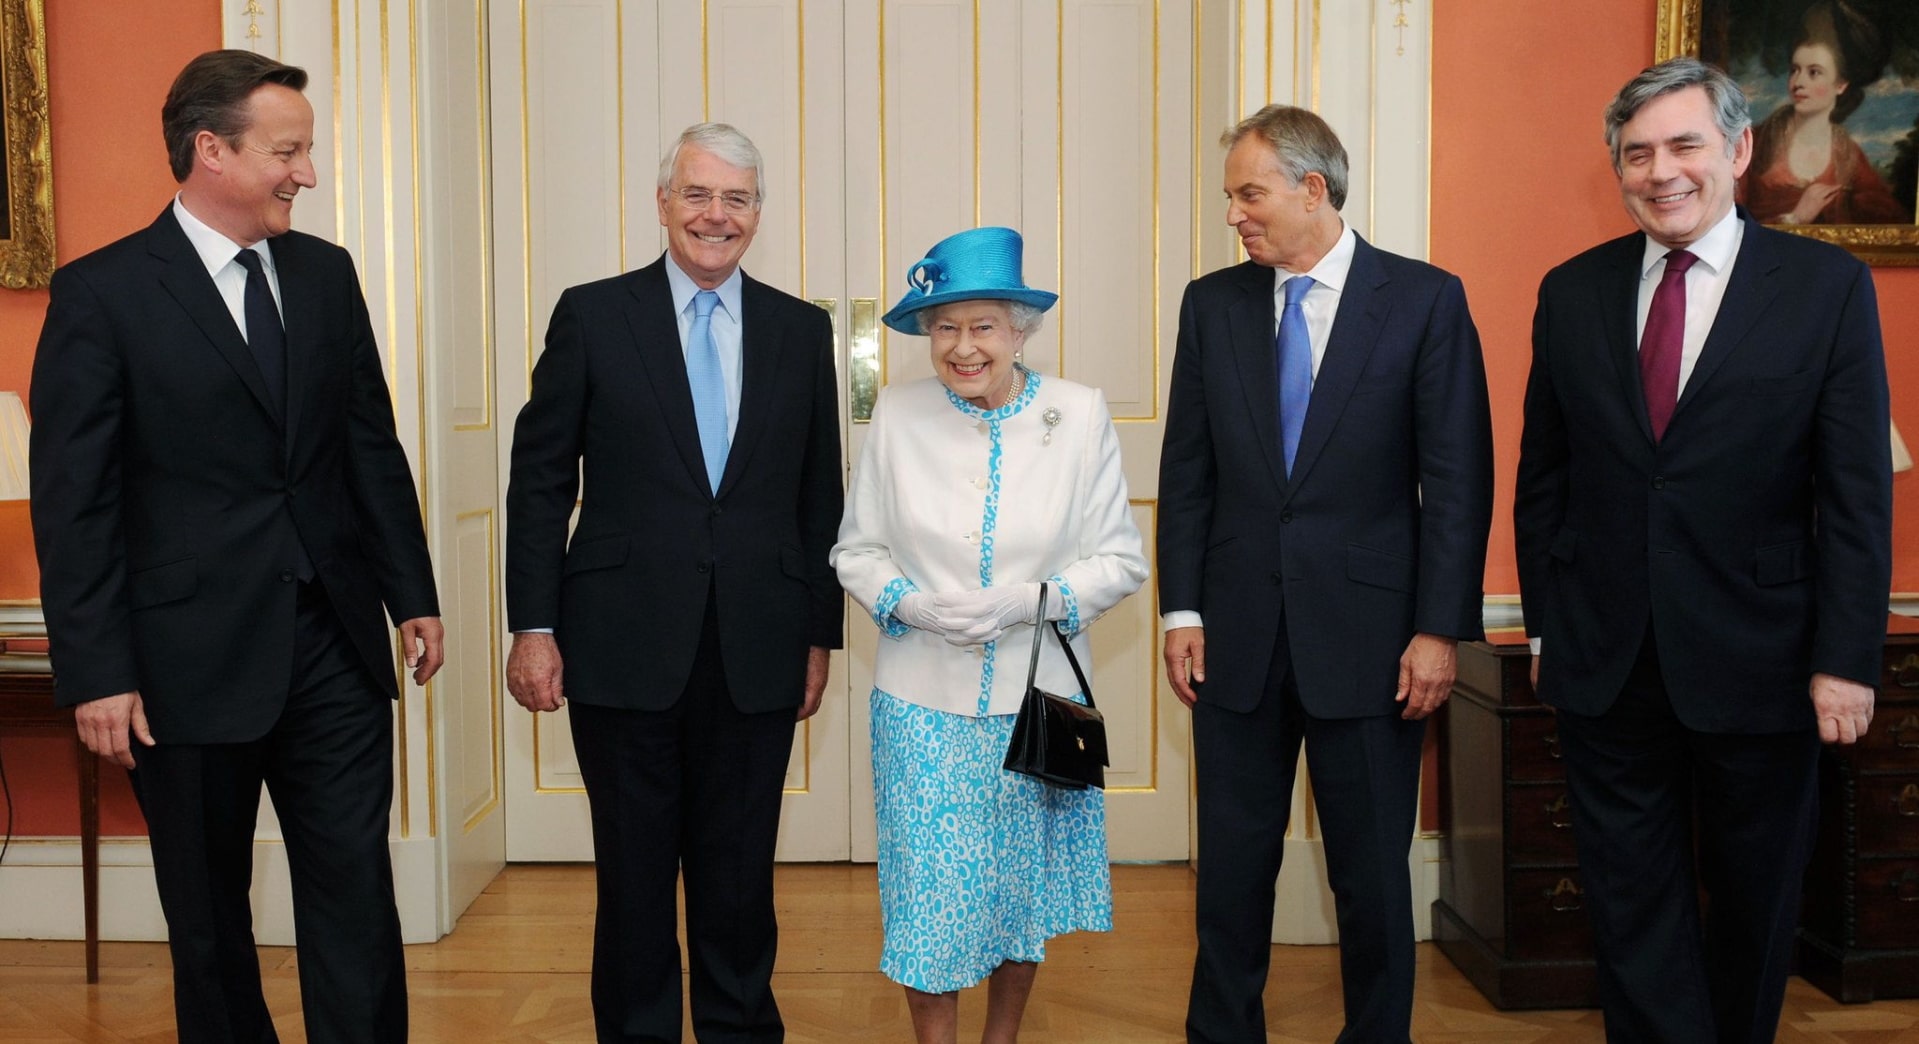 Кто главнее: королева или премьер-министр Великобритании?